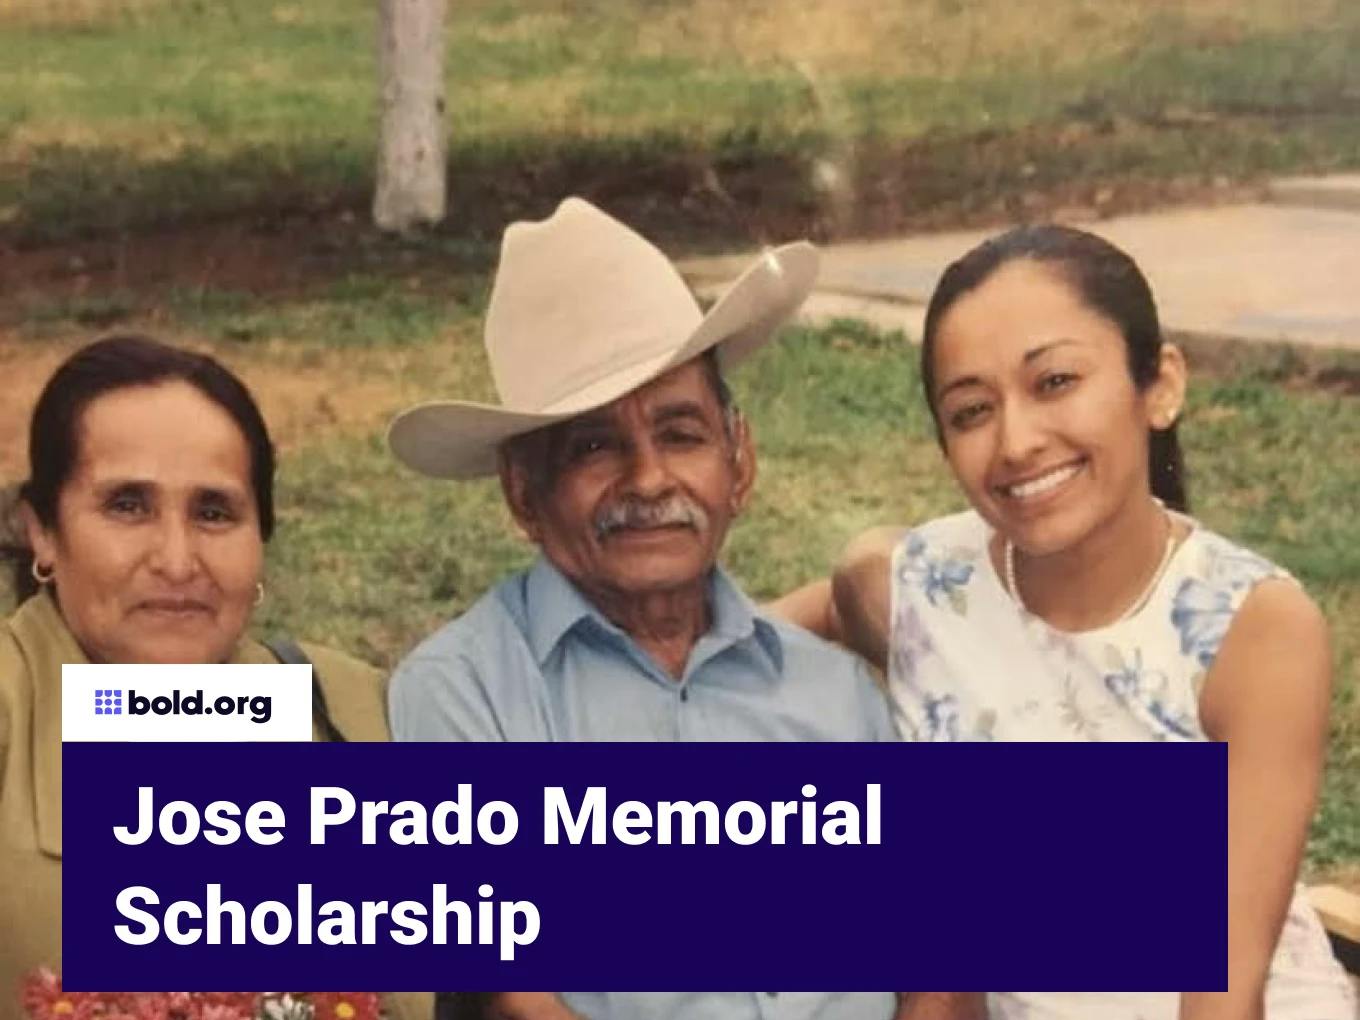 Jose Prado Memorial Scholarship